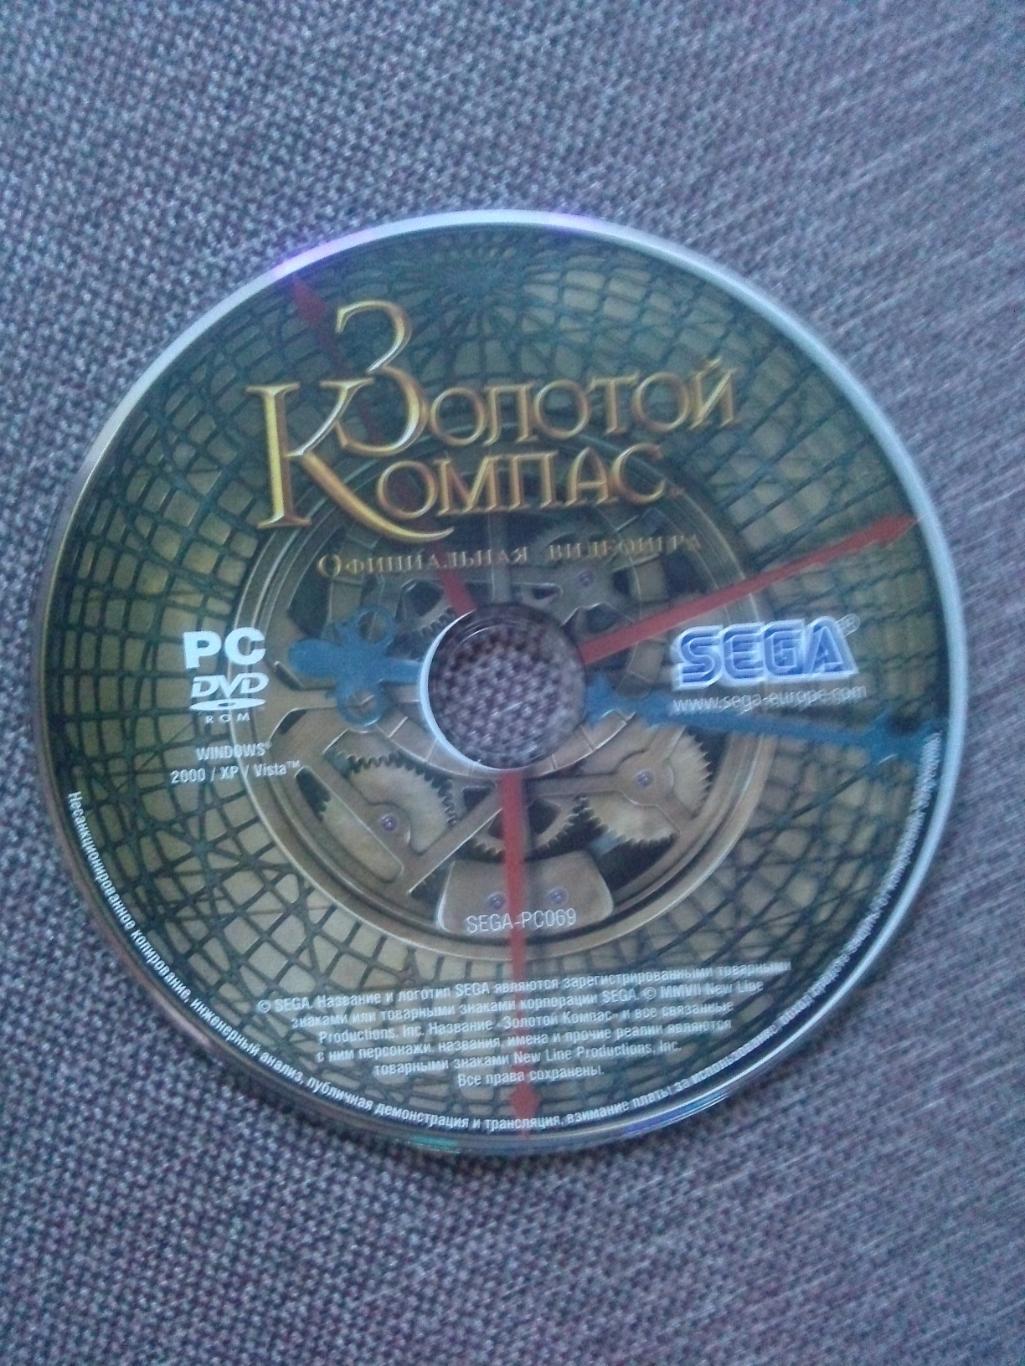 PC DVD ROM :Золотой компас(официальная видеоигра) Игра для компьютера 1